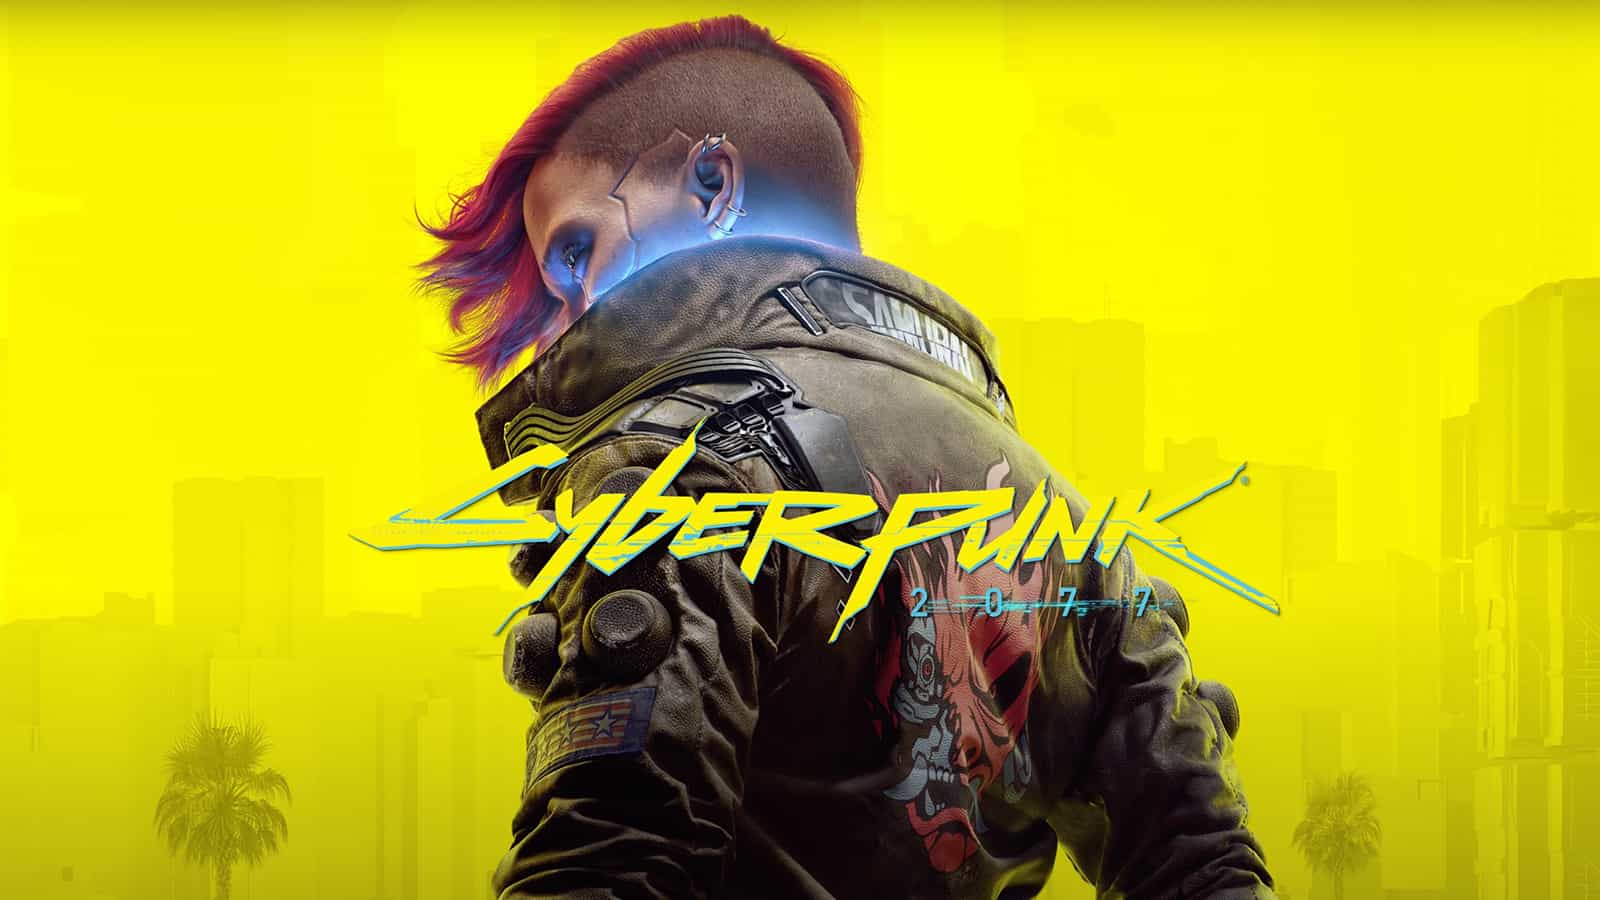 Cyberpunk 2077 Update